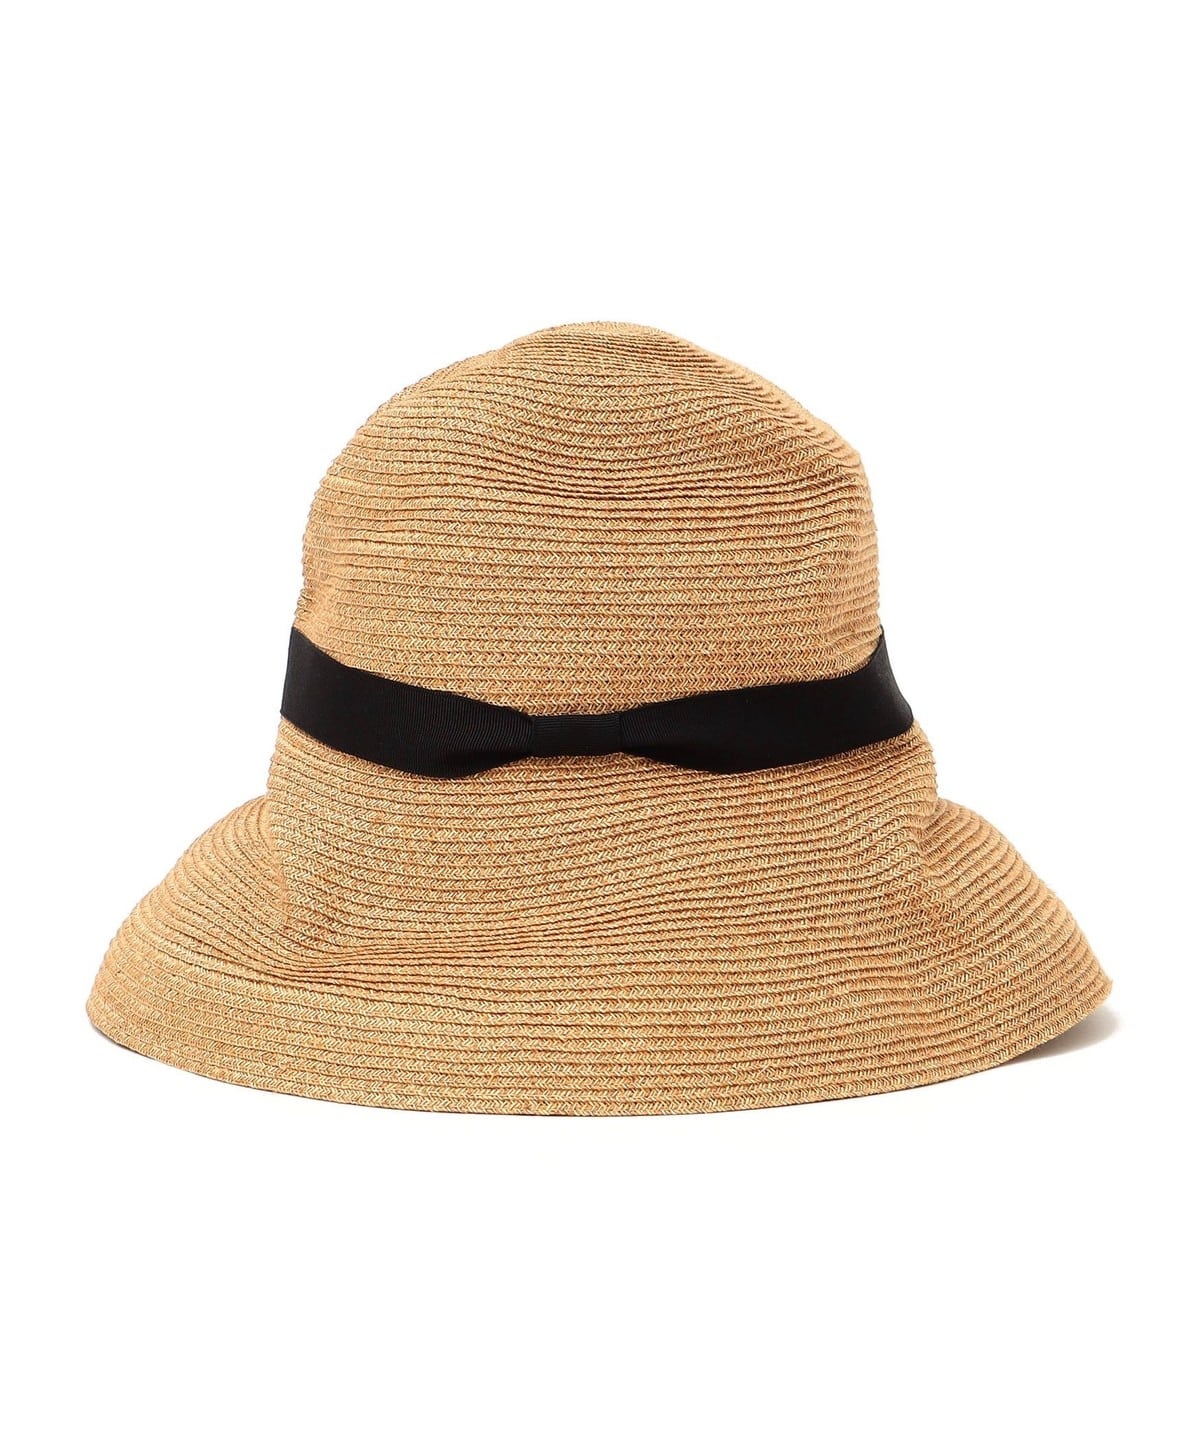 mature ha.:ボックスハットミックス 11cm: 帽子 SHIPS 公式サイト 